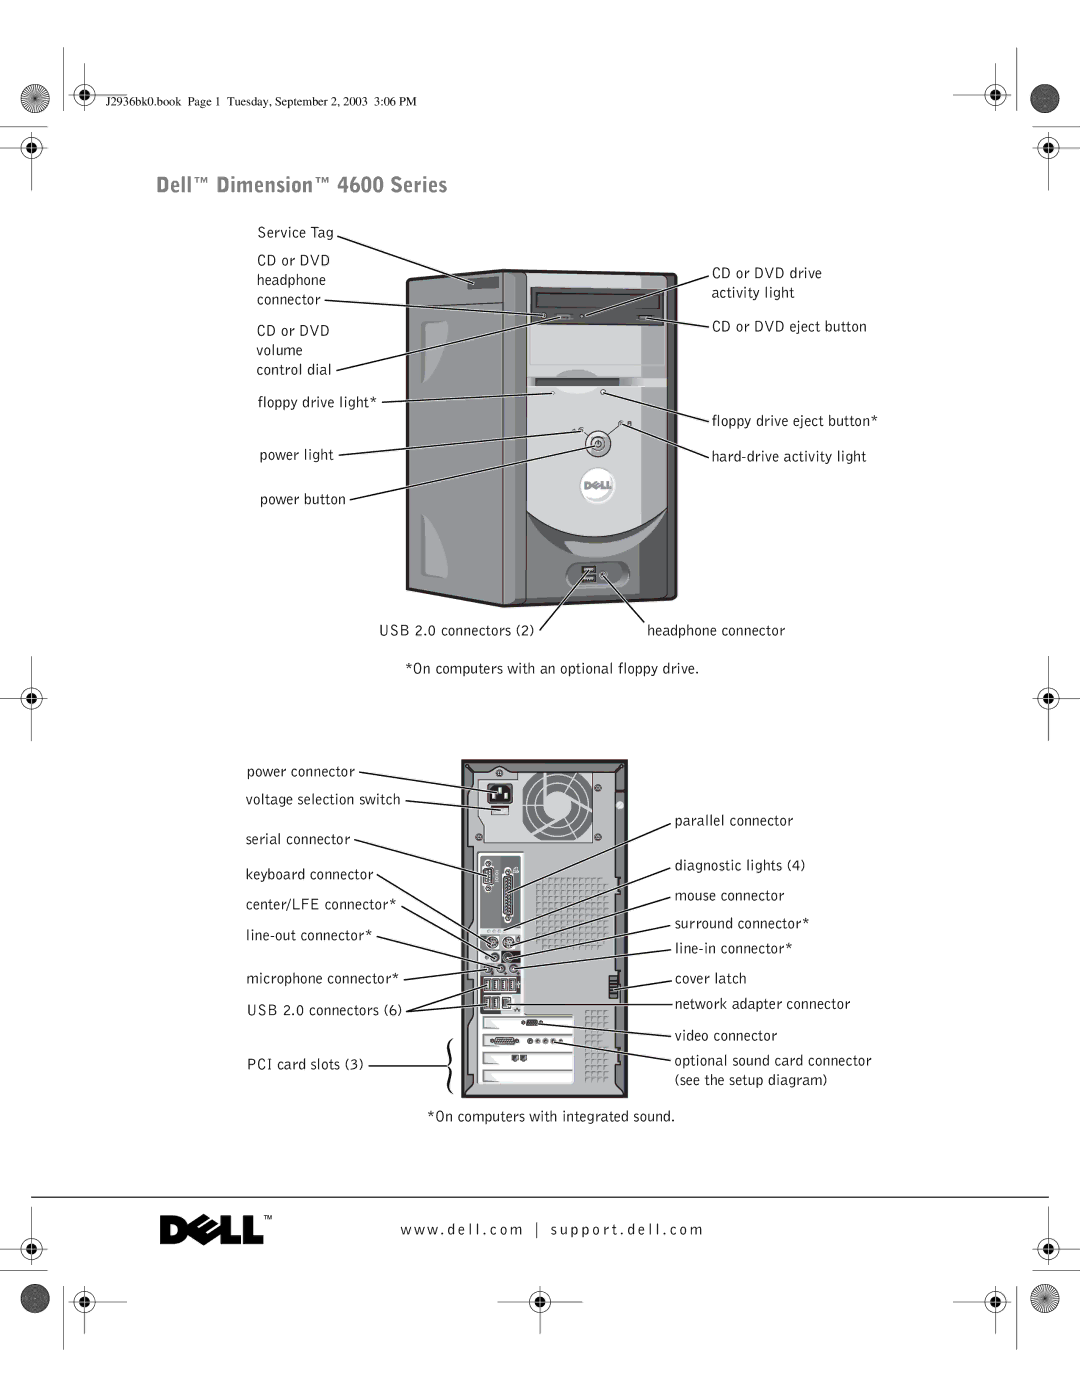 Dell J2936 manual Dell Dimension 4600 Series 